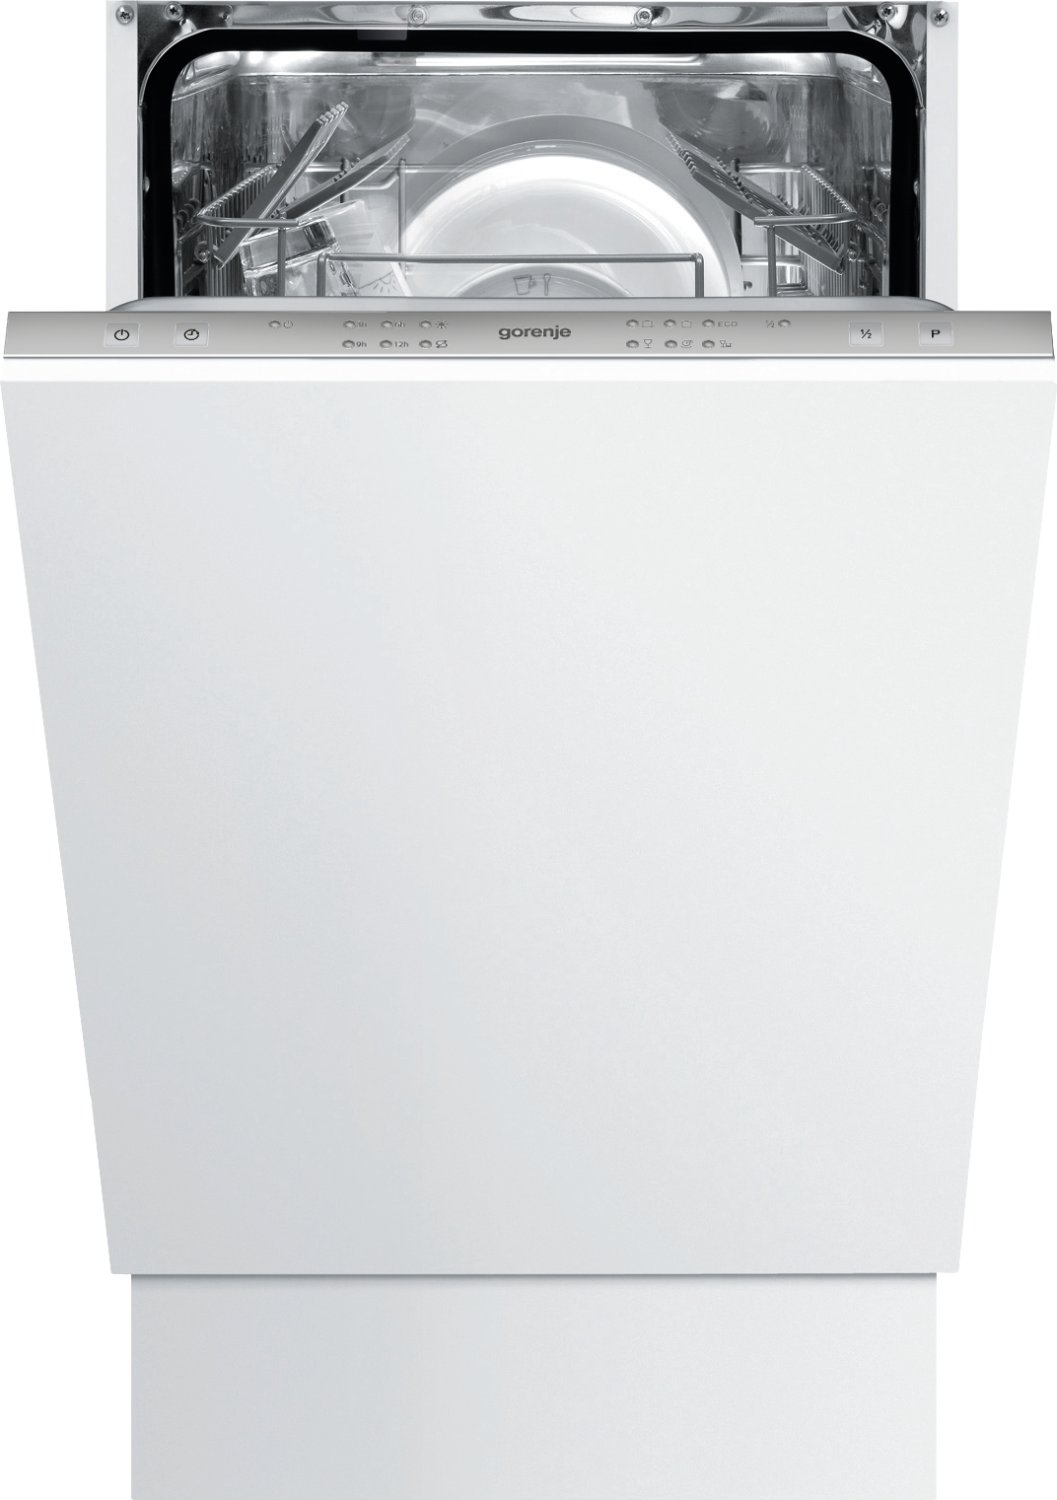 Встраиваемая посудомоечная машина GORENJE GV51212 (82x45x55 комплектов посуды, 6 программы, расход 9л, электронное управление)